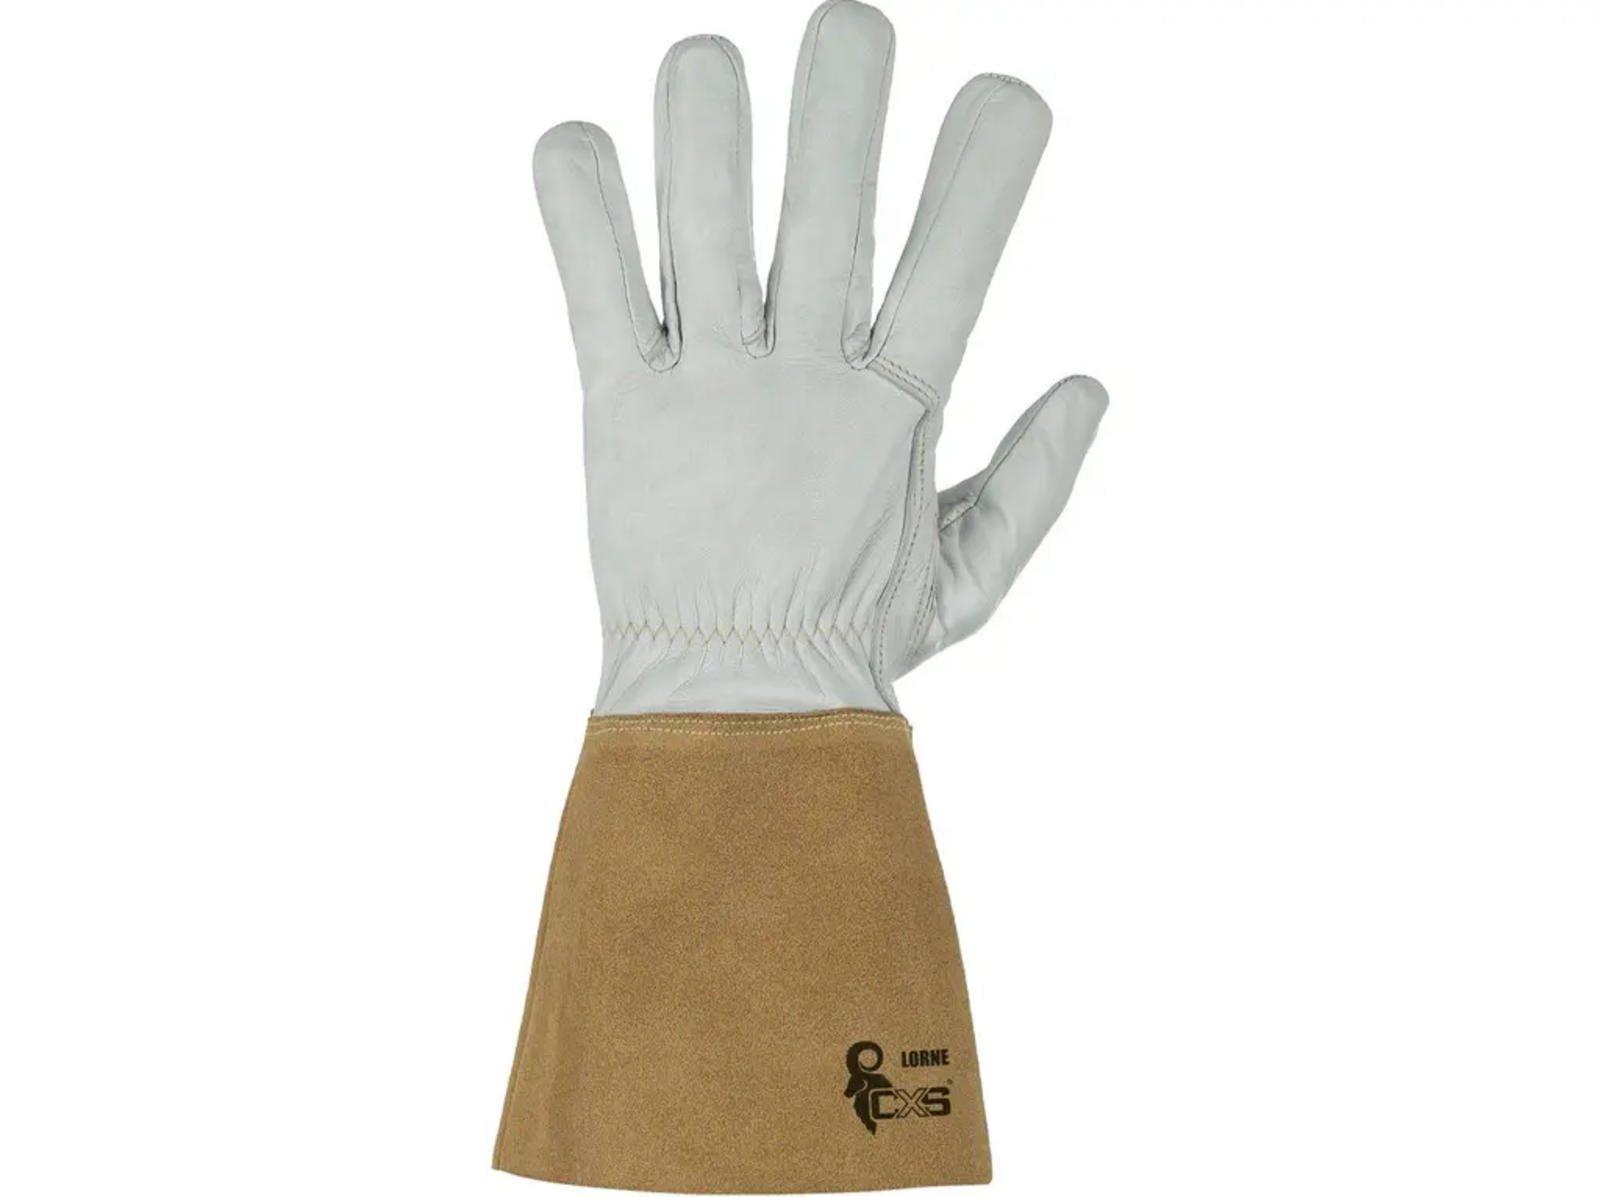 Zváračské rukavice CXS Lorne - veľkosť: 10/XL, farba: sivá/hnedá